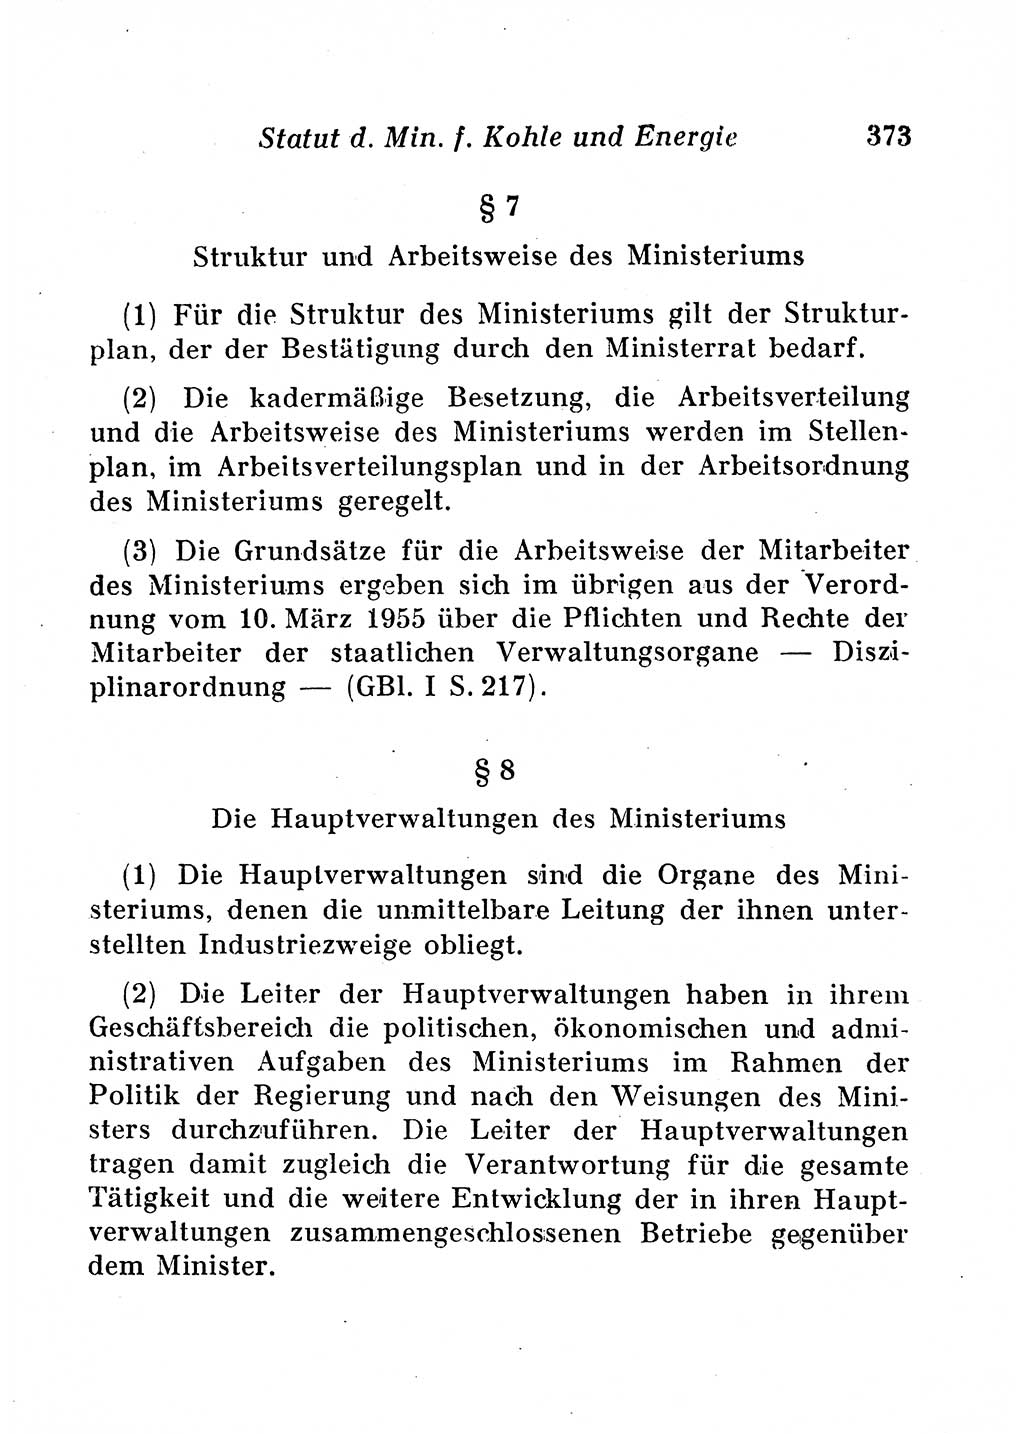 Staats- und verwaltungsrechtliche Gesetze der Deutschen Demokratischen Republik (DDR) 1958, Seite 373 (StVerwR Ges. DDR 1958, S. 373)